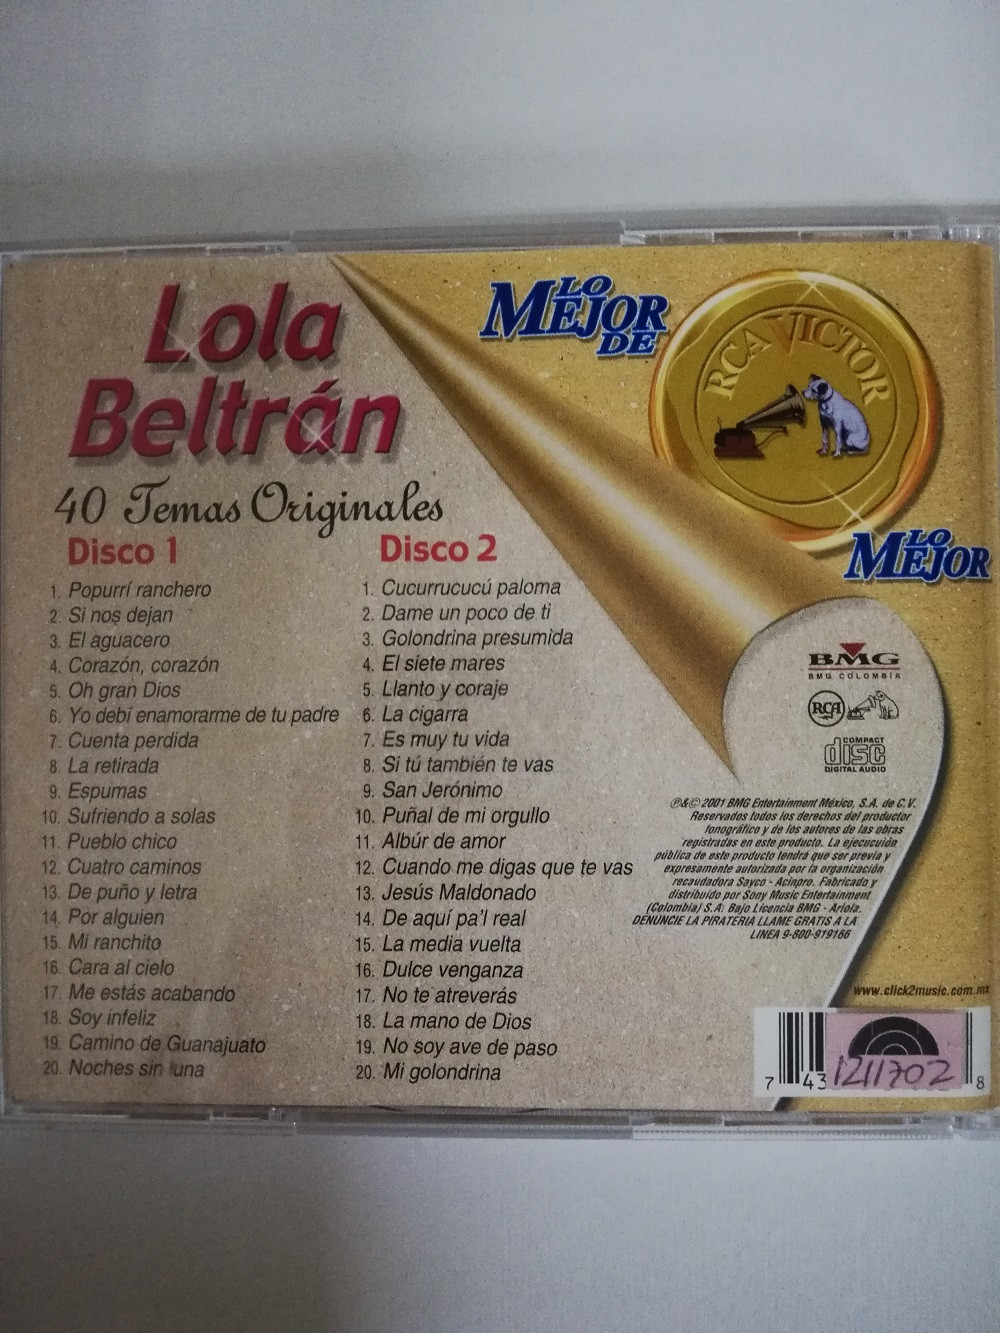 Imagen CD X 2 LOLA BELTRÁN - LO MEJOR DE LO MEJOR 2